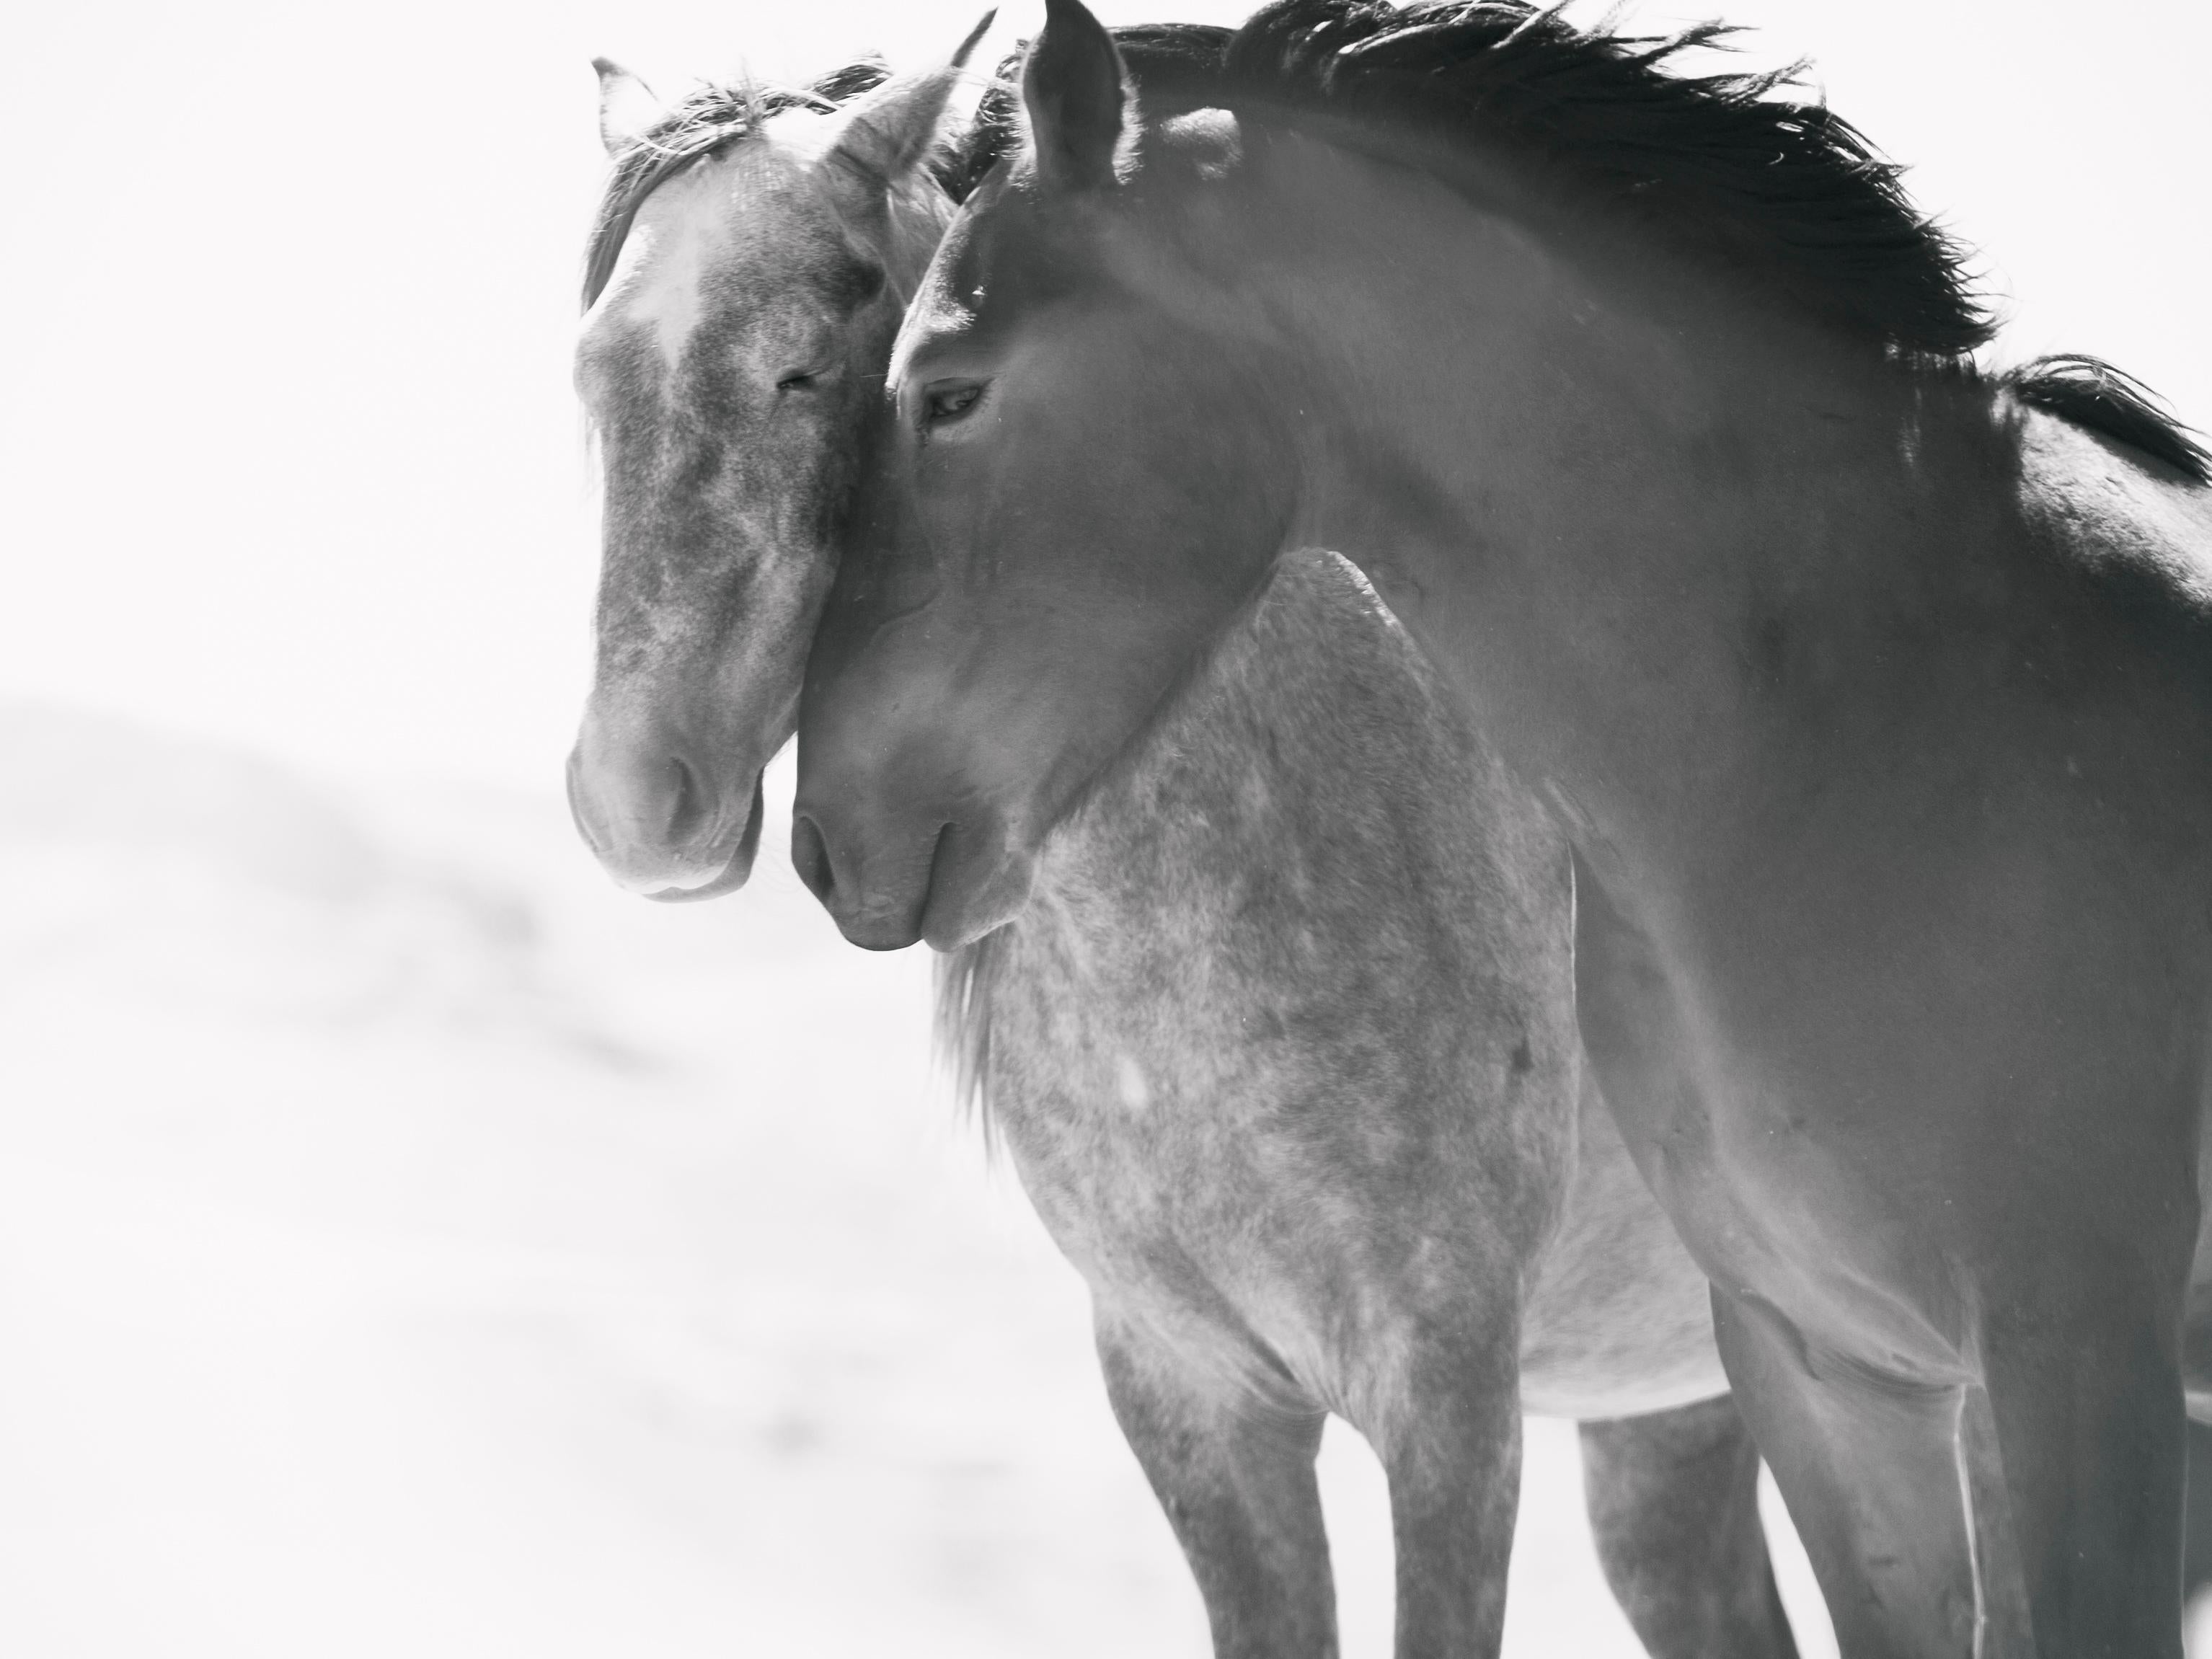 Black and White Photograph de Shane Russeck - "Almas gemelas" 30x40  Fotografía en blanco y negro  Caballos salvajes Mustangs Fotografía 